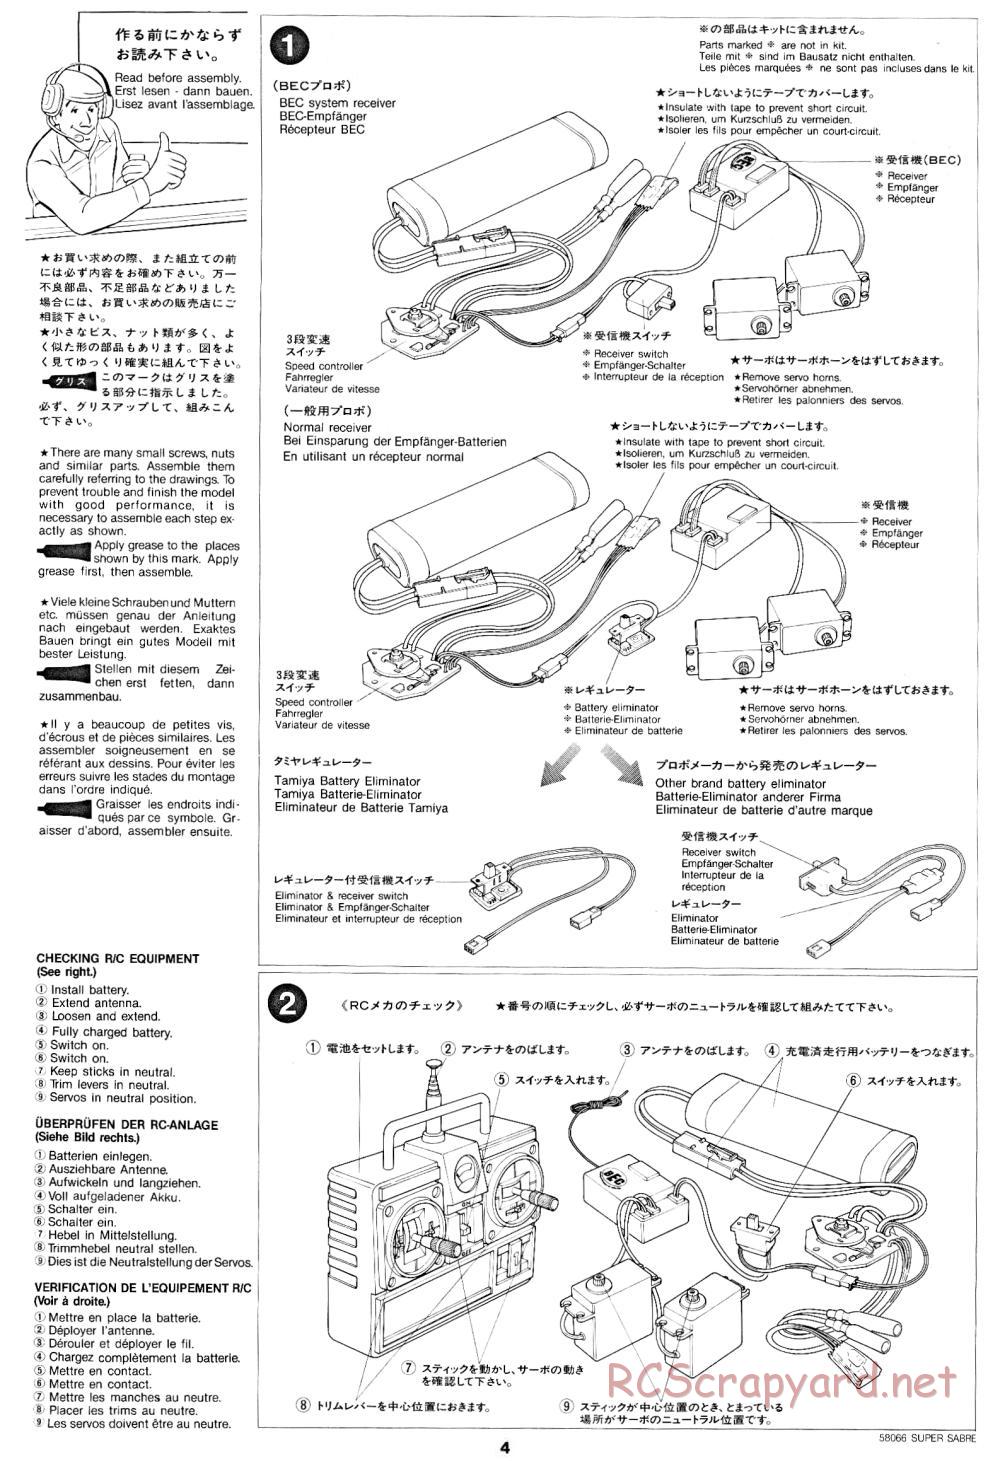 Tamiya - Super Sabre - 58066 - Manual - Page 4